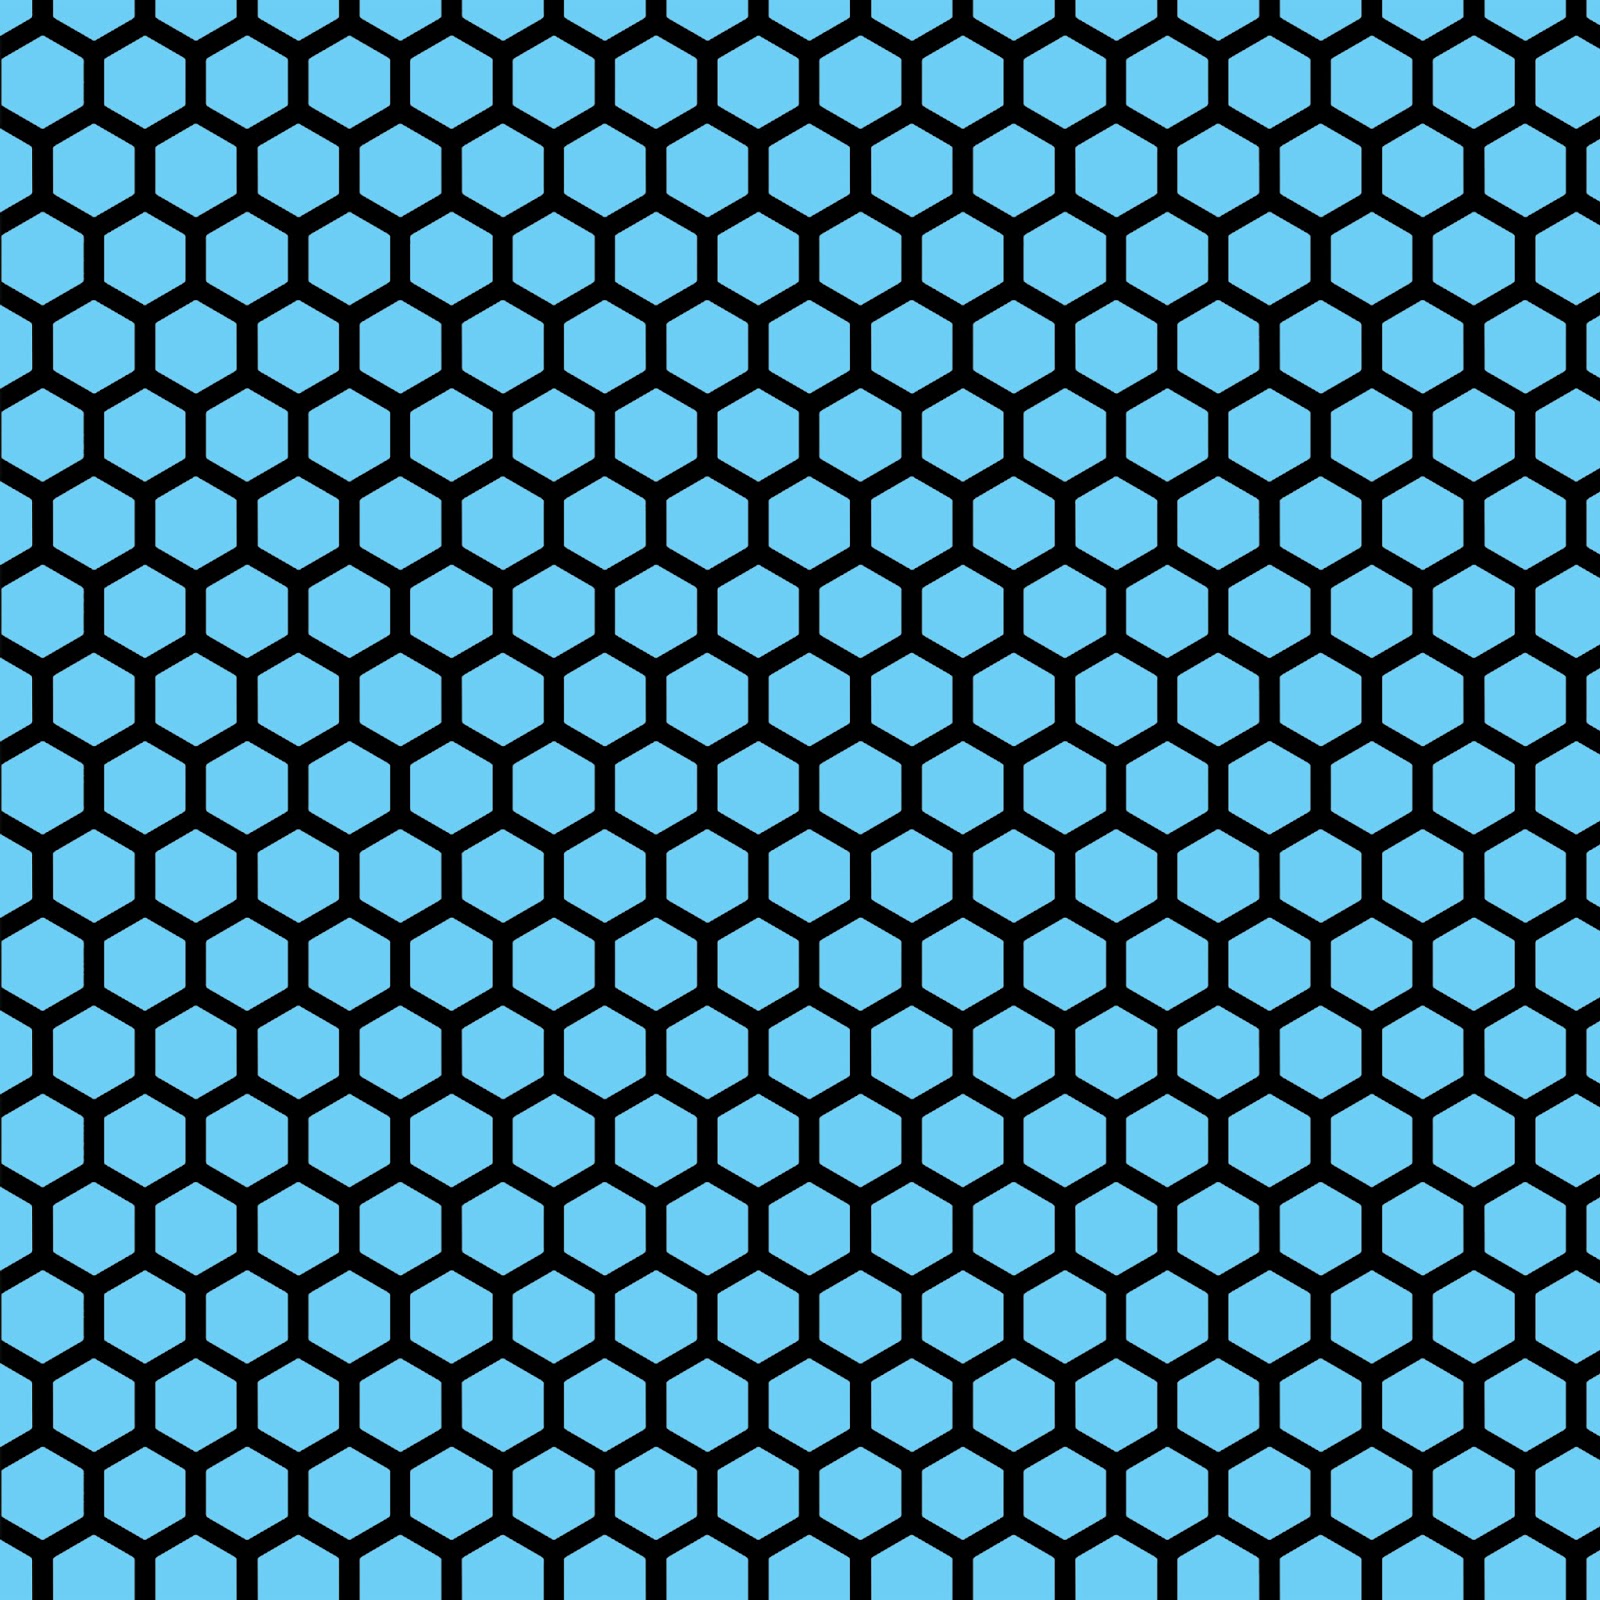 Green Mint Blue Honeyb Hexagon Background Pattern Wallpaper Bie